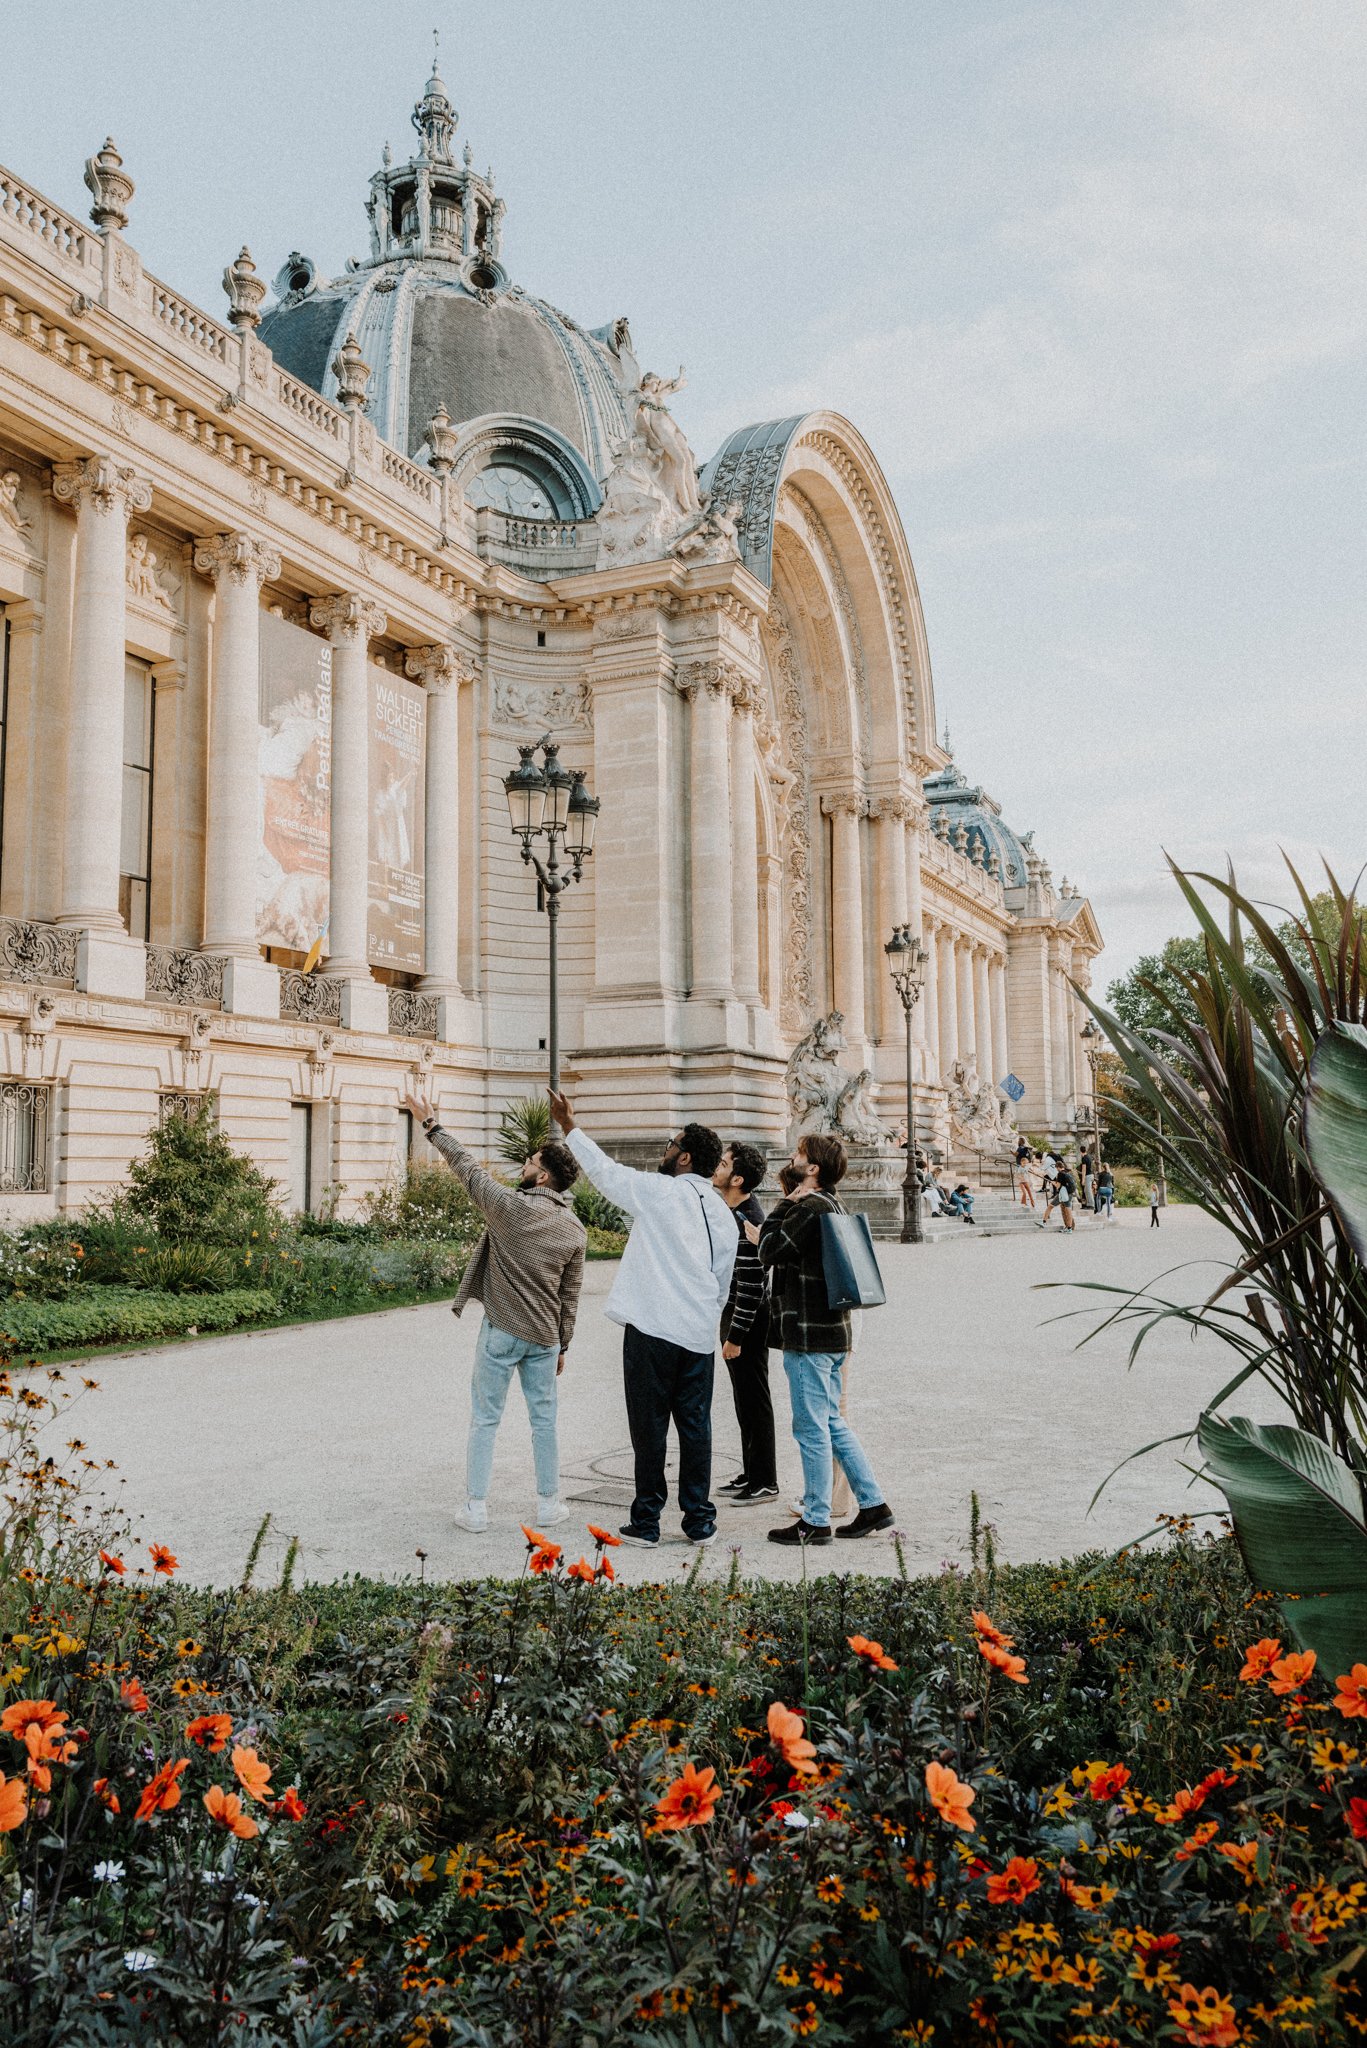 Outside Grand Palais